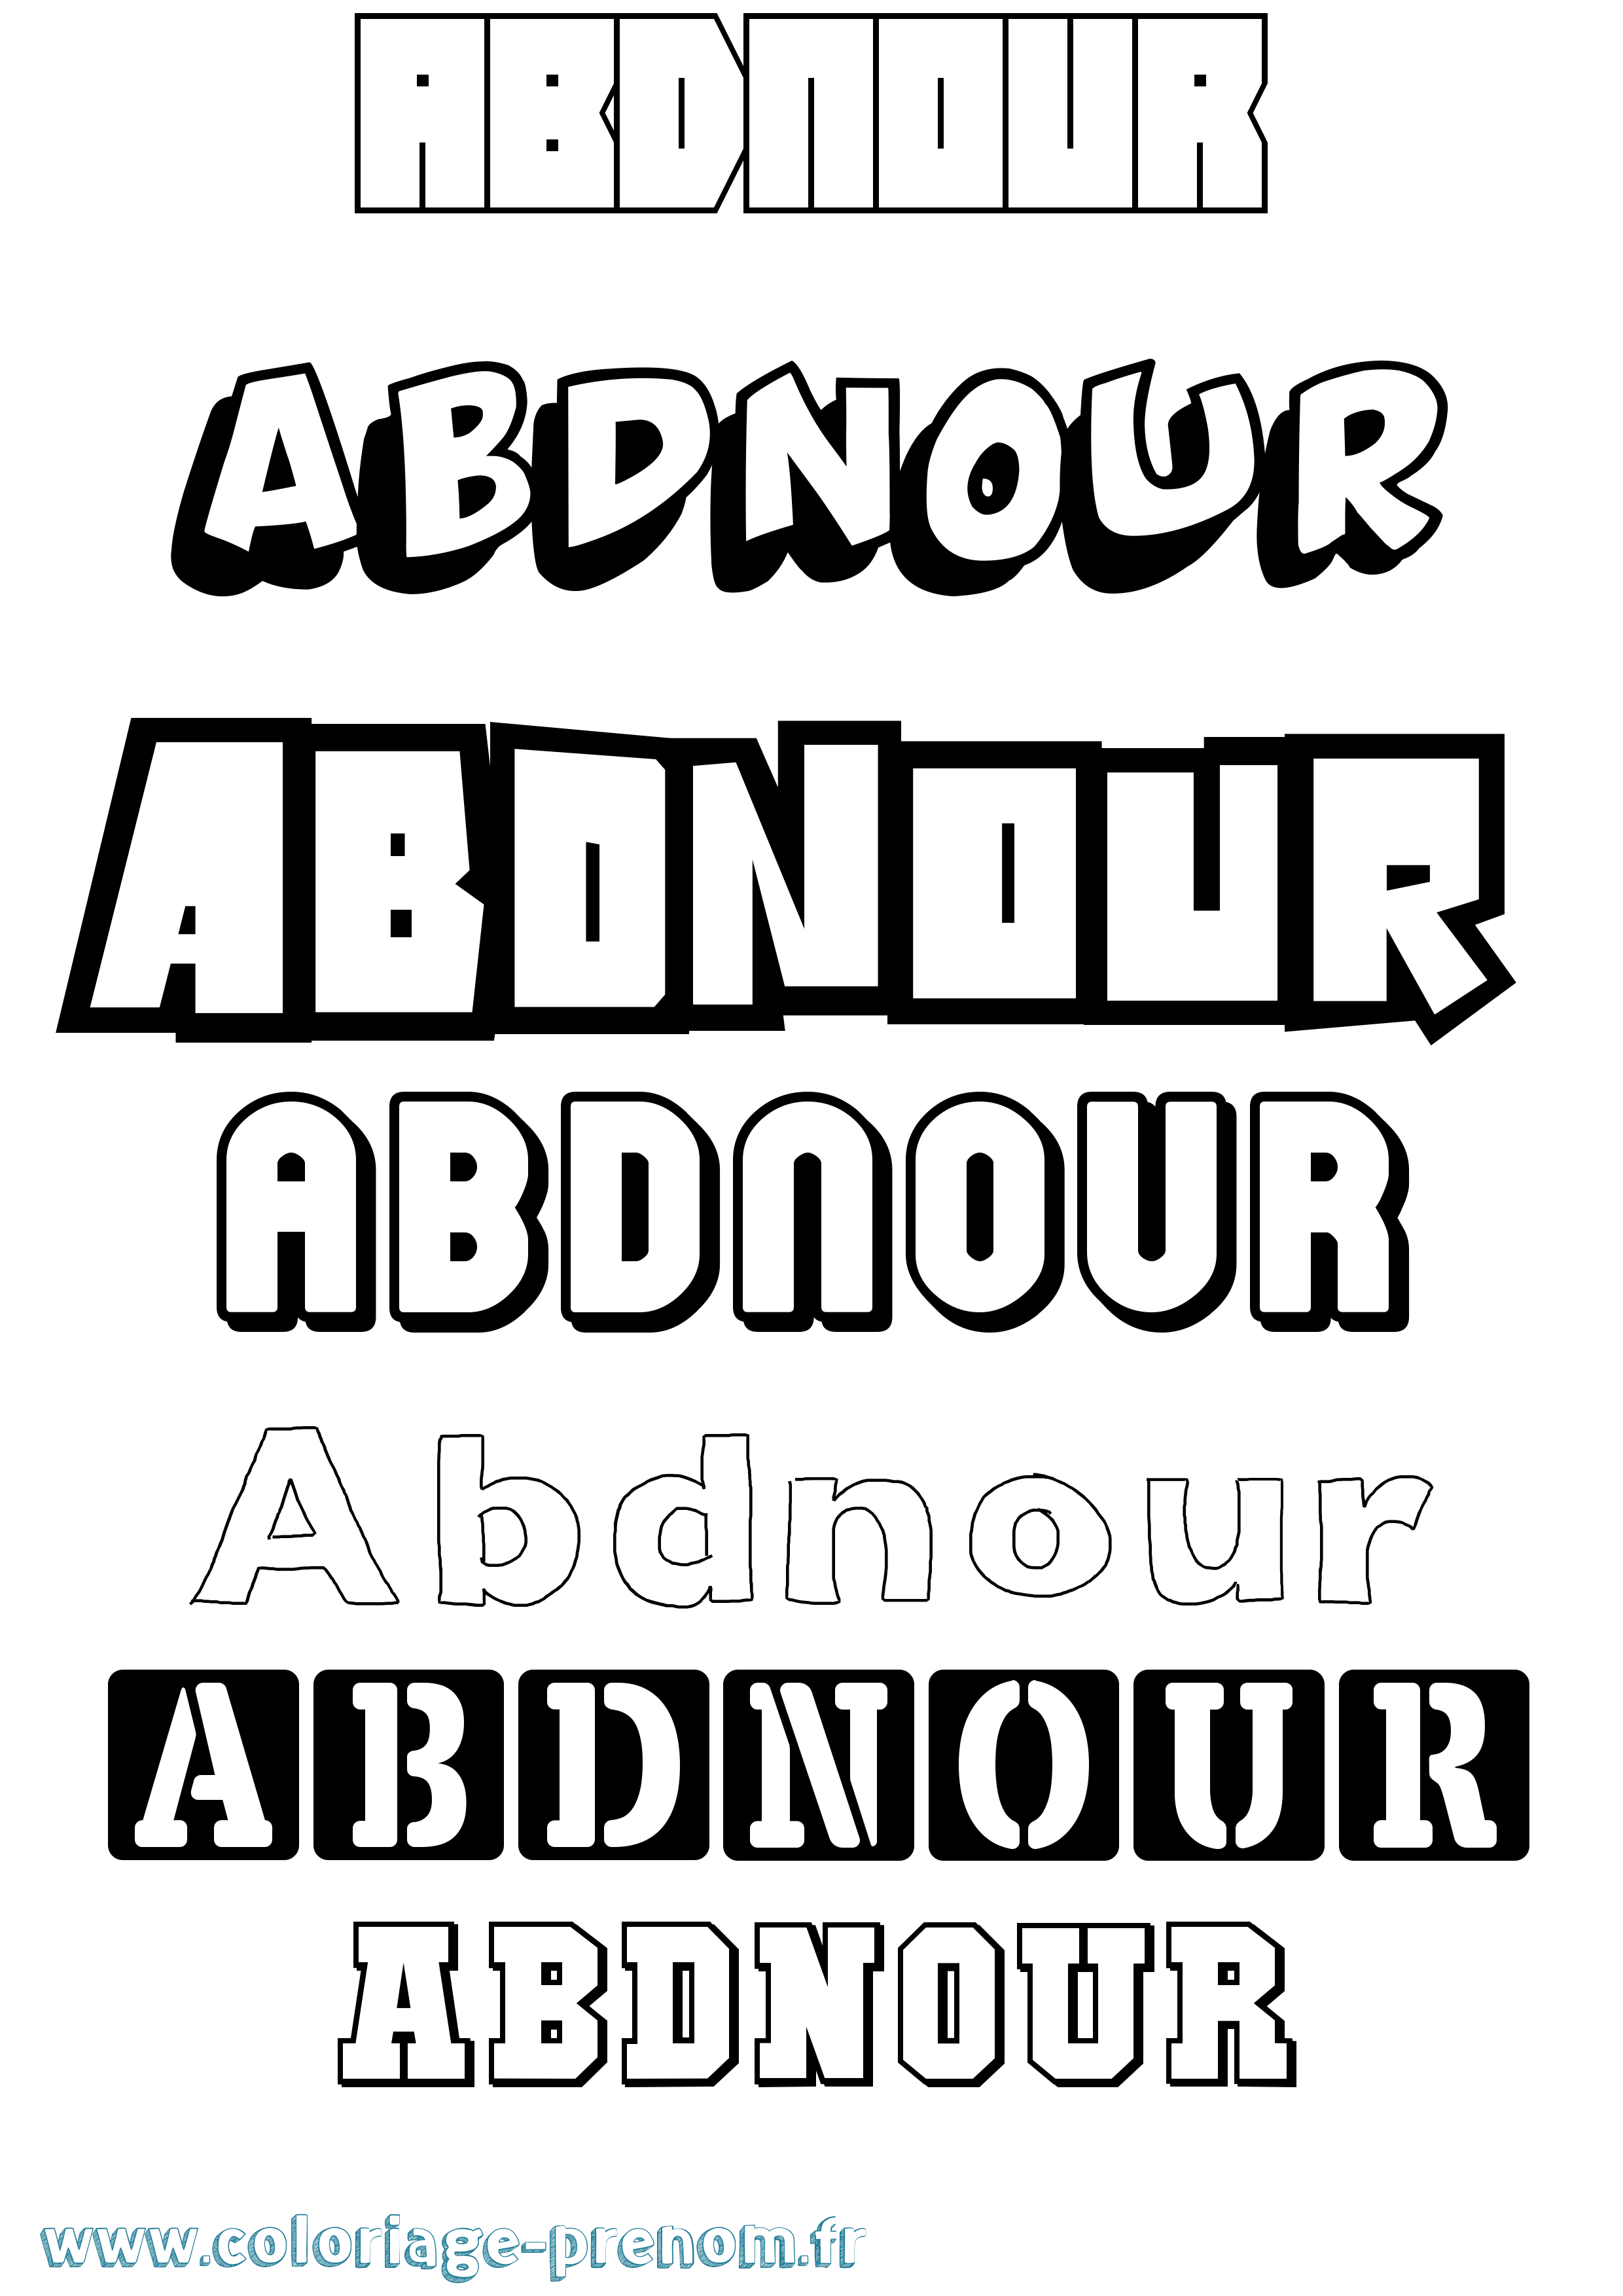 Coloriage prénom Abdnour Simple